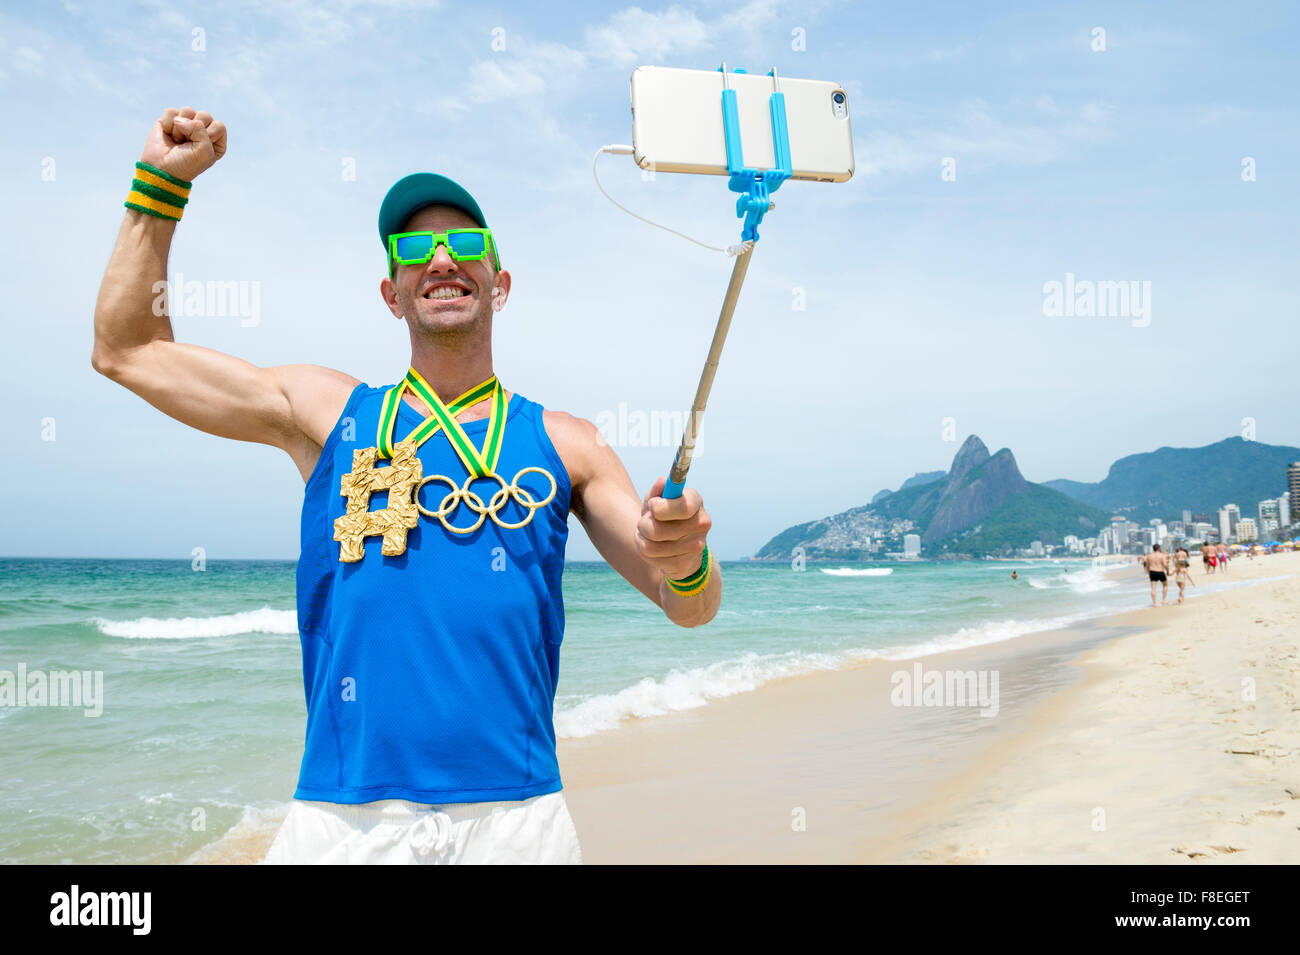 RIO DE JANEIRO, Brasilien - 27. Oktober 2015: Sportler mit Hashtag und Olympischen Ringe Gold Medaillen steht unter einem Selfie auf Ipanema. Stockfoto